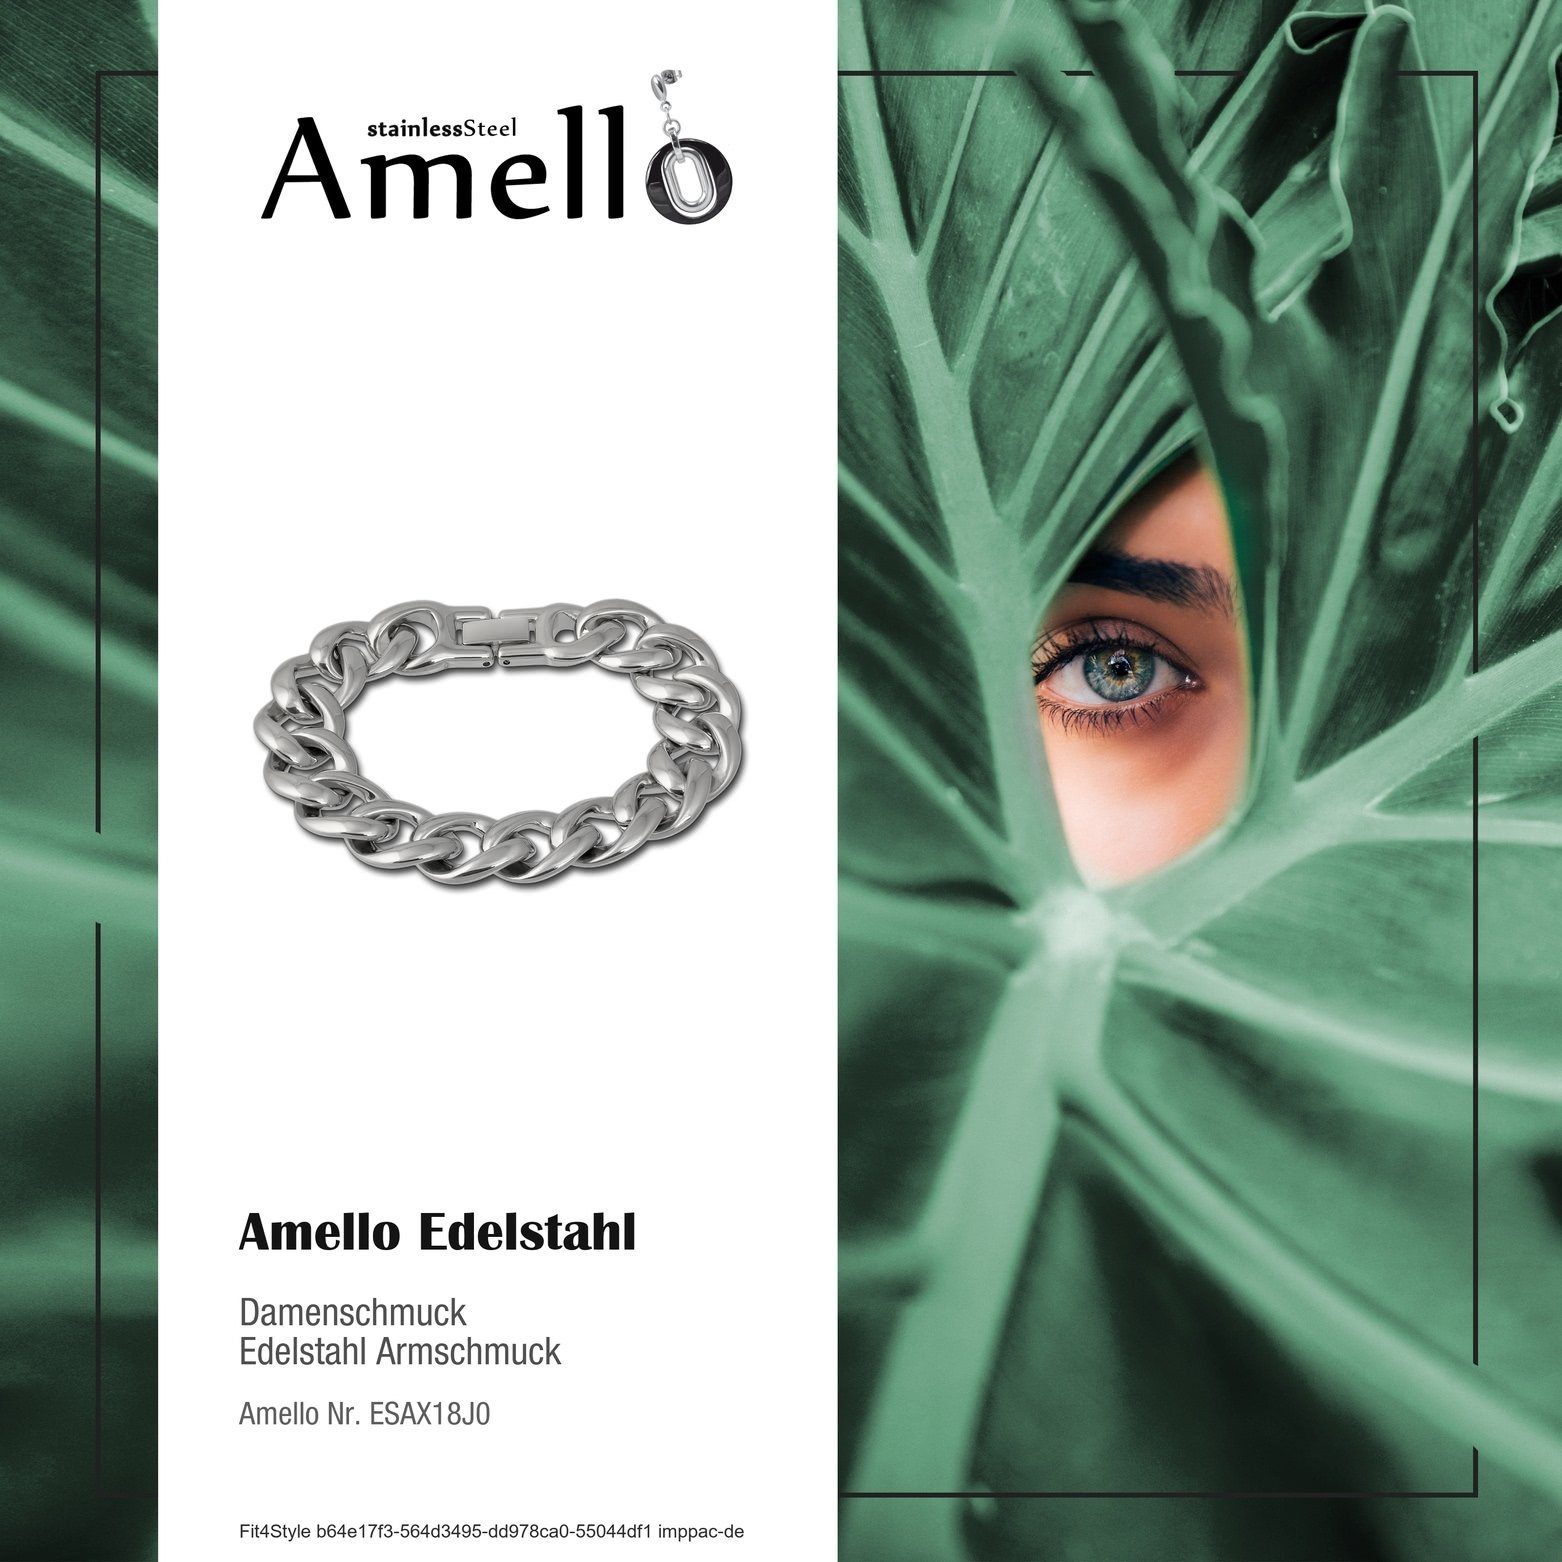 Damen Edelstahl (Stainless Steel) Edelstahlarmband Amello Panzer (Armband), Armband Amello Armbänder silber für